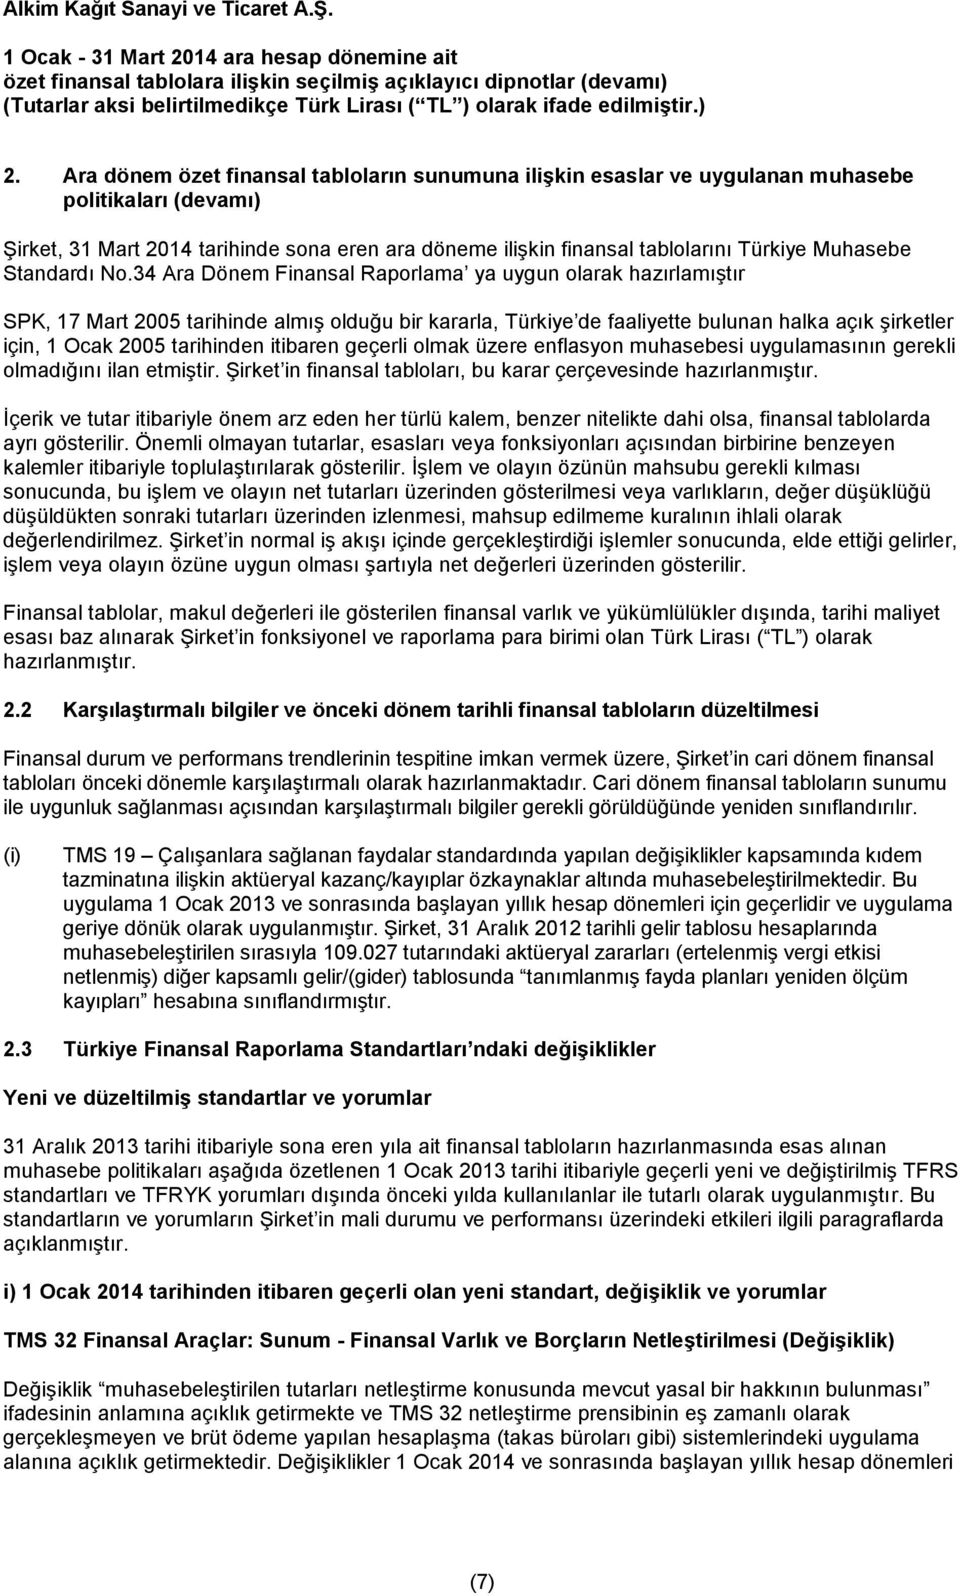 34 Ara Dönem Finansal Raporlama ya uygun olarak hazırlamıştır SPK, 17 Mart 2005 tarihinde almış olduğu bir kararla, Türkiye de faaliyette bulunan halka açık şirketler için, 1 Ocak 2005 tarihinden